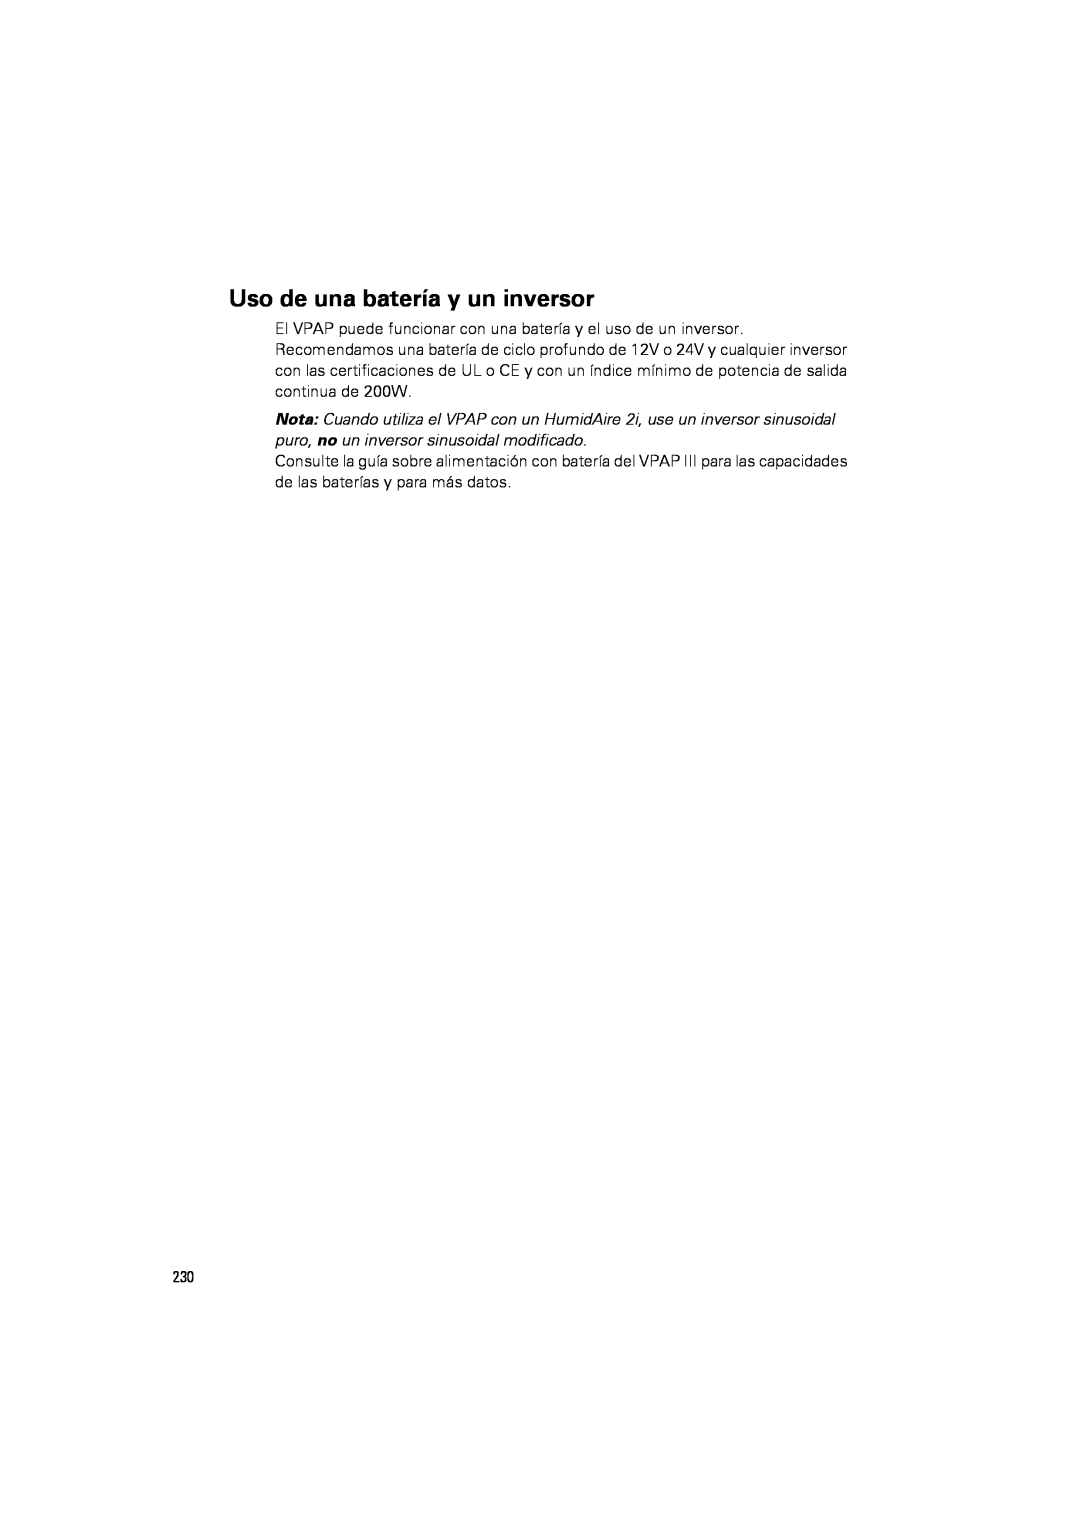 ResMed III & III ST user manual Uso de una batería y un inversor 